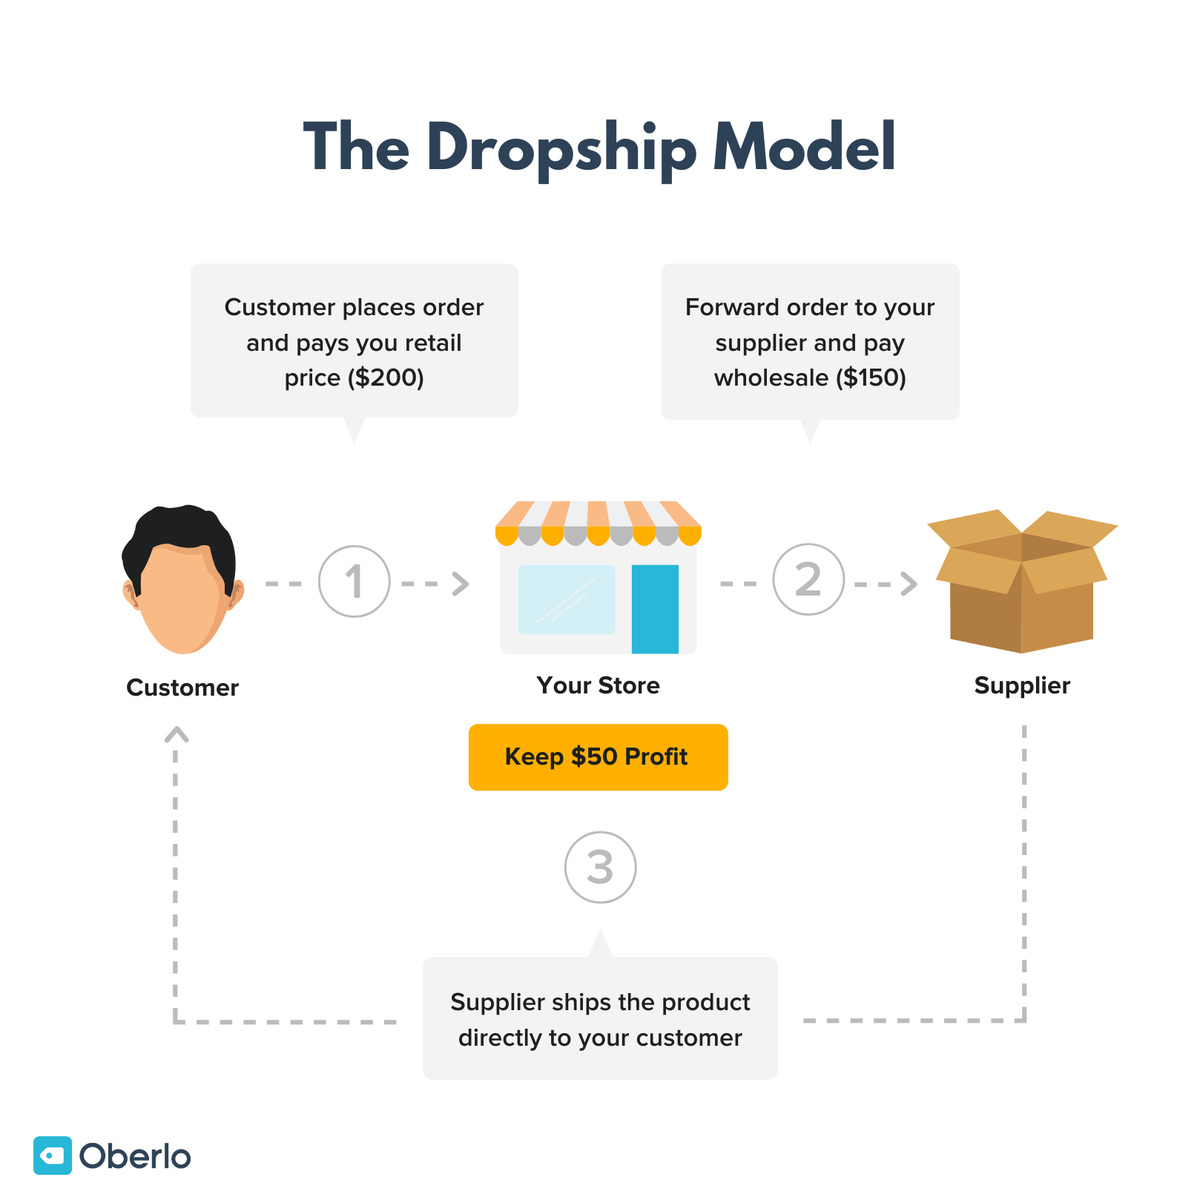 Imatge que mostra el model de negoci dropship